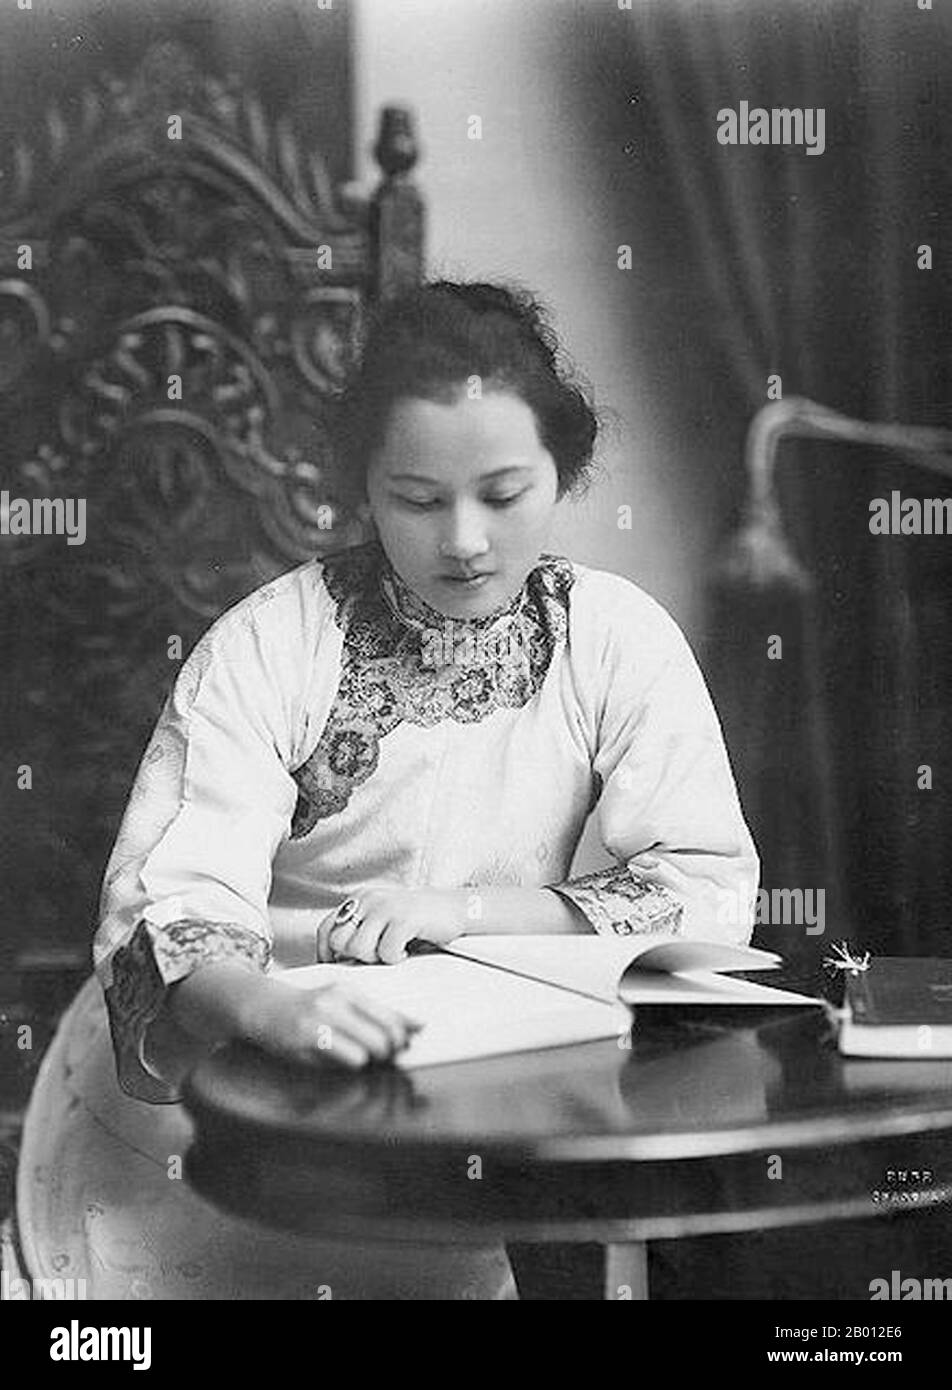 Cina: Canzone Qingling (Soong CH'ing-ling, 1893-1981), conosciuta anche come Madame Sun Yat-sen, Shanghai, 1920. Soong CH'ing-ling, Shanghai, 1920 (pinyin: Song Qingling, 27 gennaio 1893 – 29 maggio 1981), conosciuta anche come Madame Sun Yat-sen, è stata una delle tre suore Soong che, insieme ai loro mariti, erano tra le figure politiche più significative della Cina agli inizi del XX secolo. È stata vicepresidente della Repubblica popolare cinese. Fu la prima donna non regale a diventare ufficialmente capo di stato della Cina, in qualità di co-presidente della Repubblica dal 1968 al 1972. Foto Stock